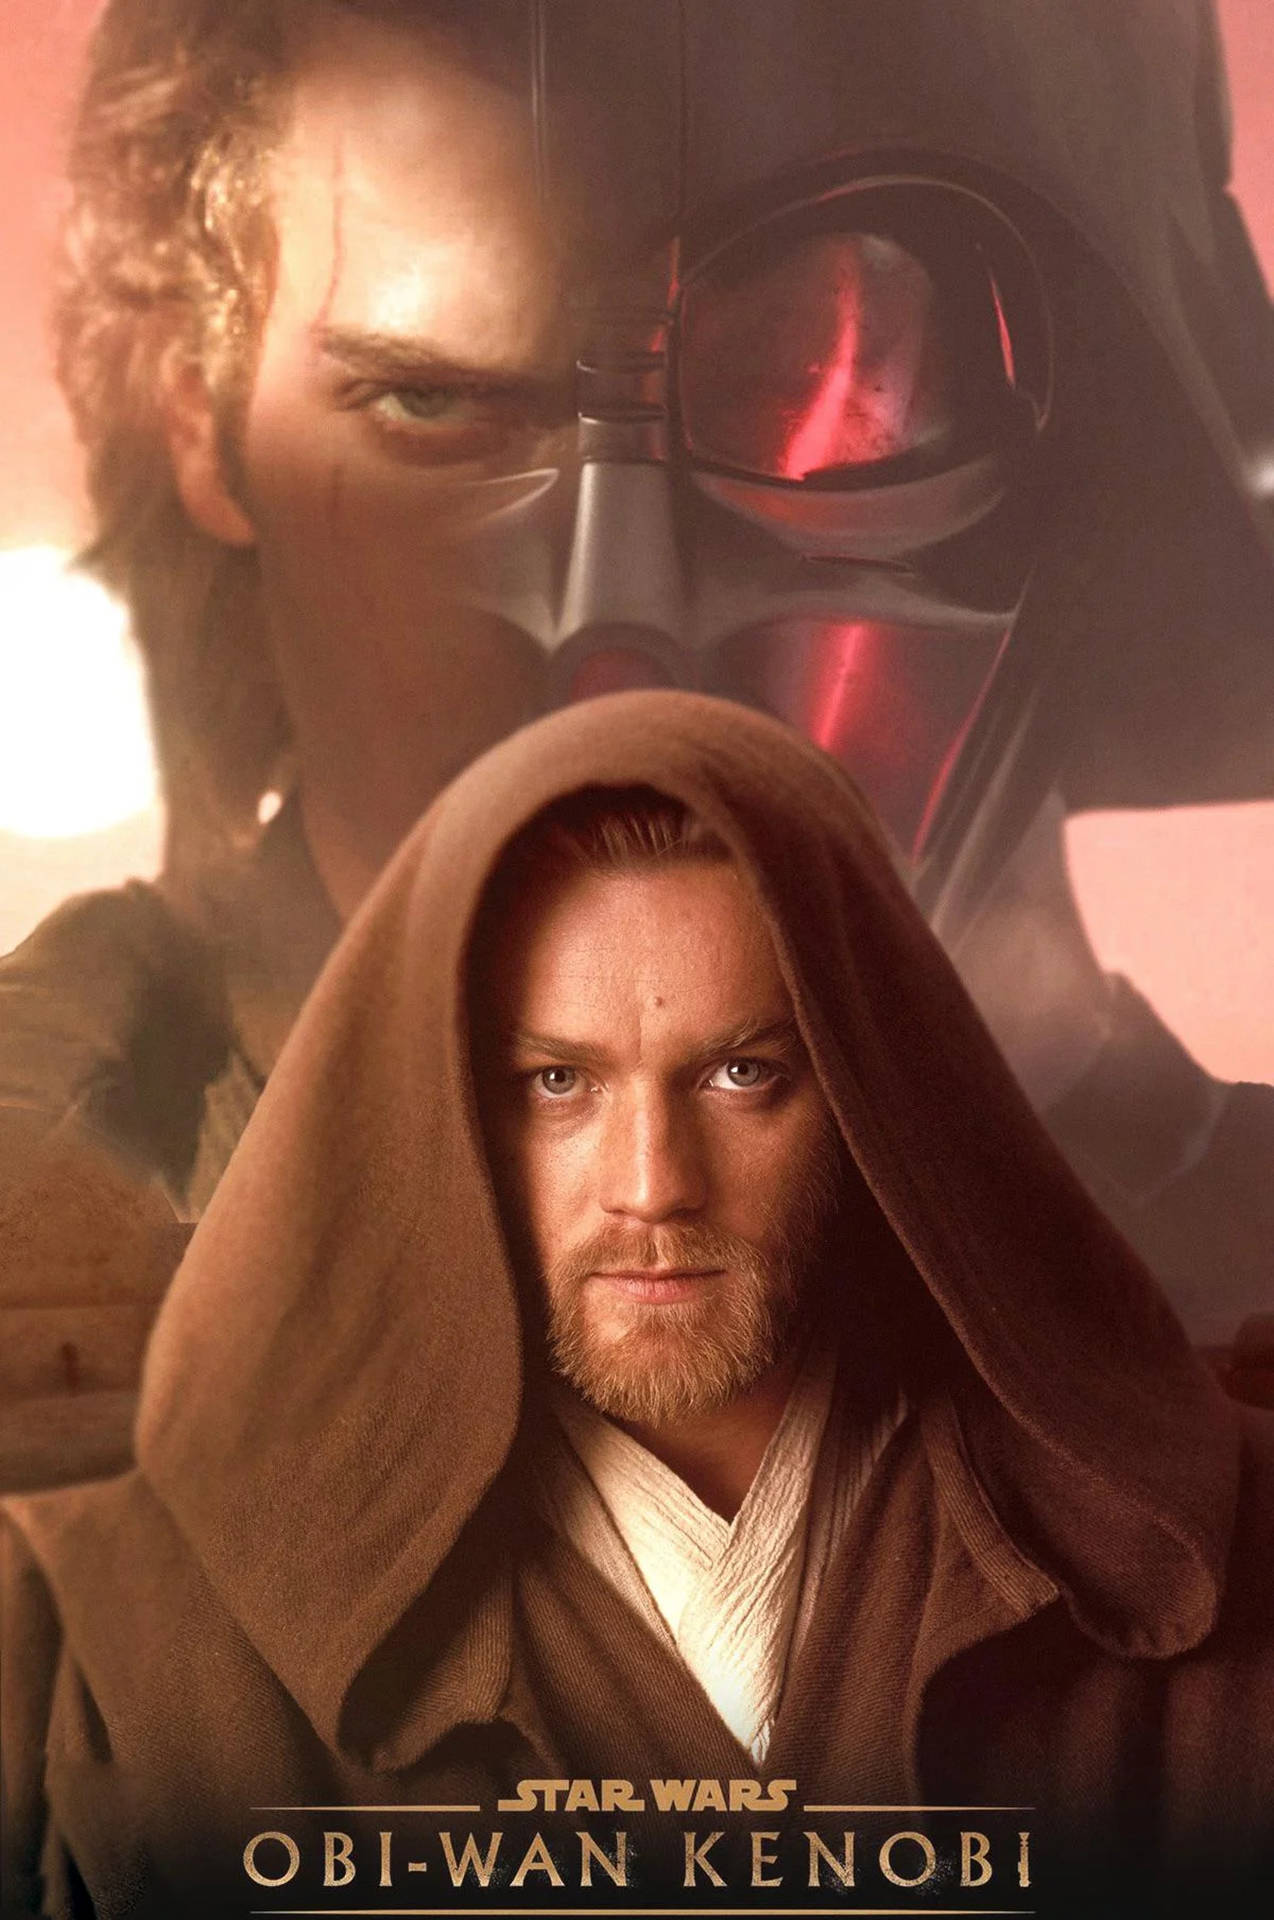 Obi Wan Kenobi og Anakin Sywalker strider mod deres skæbne. Wallpaper